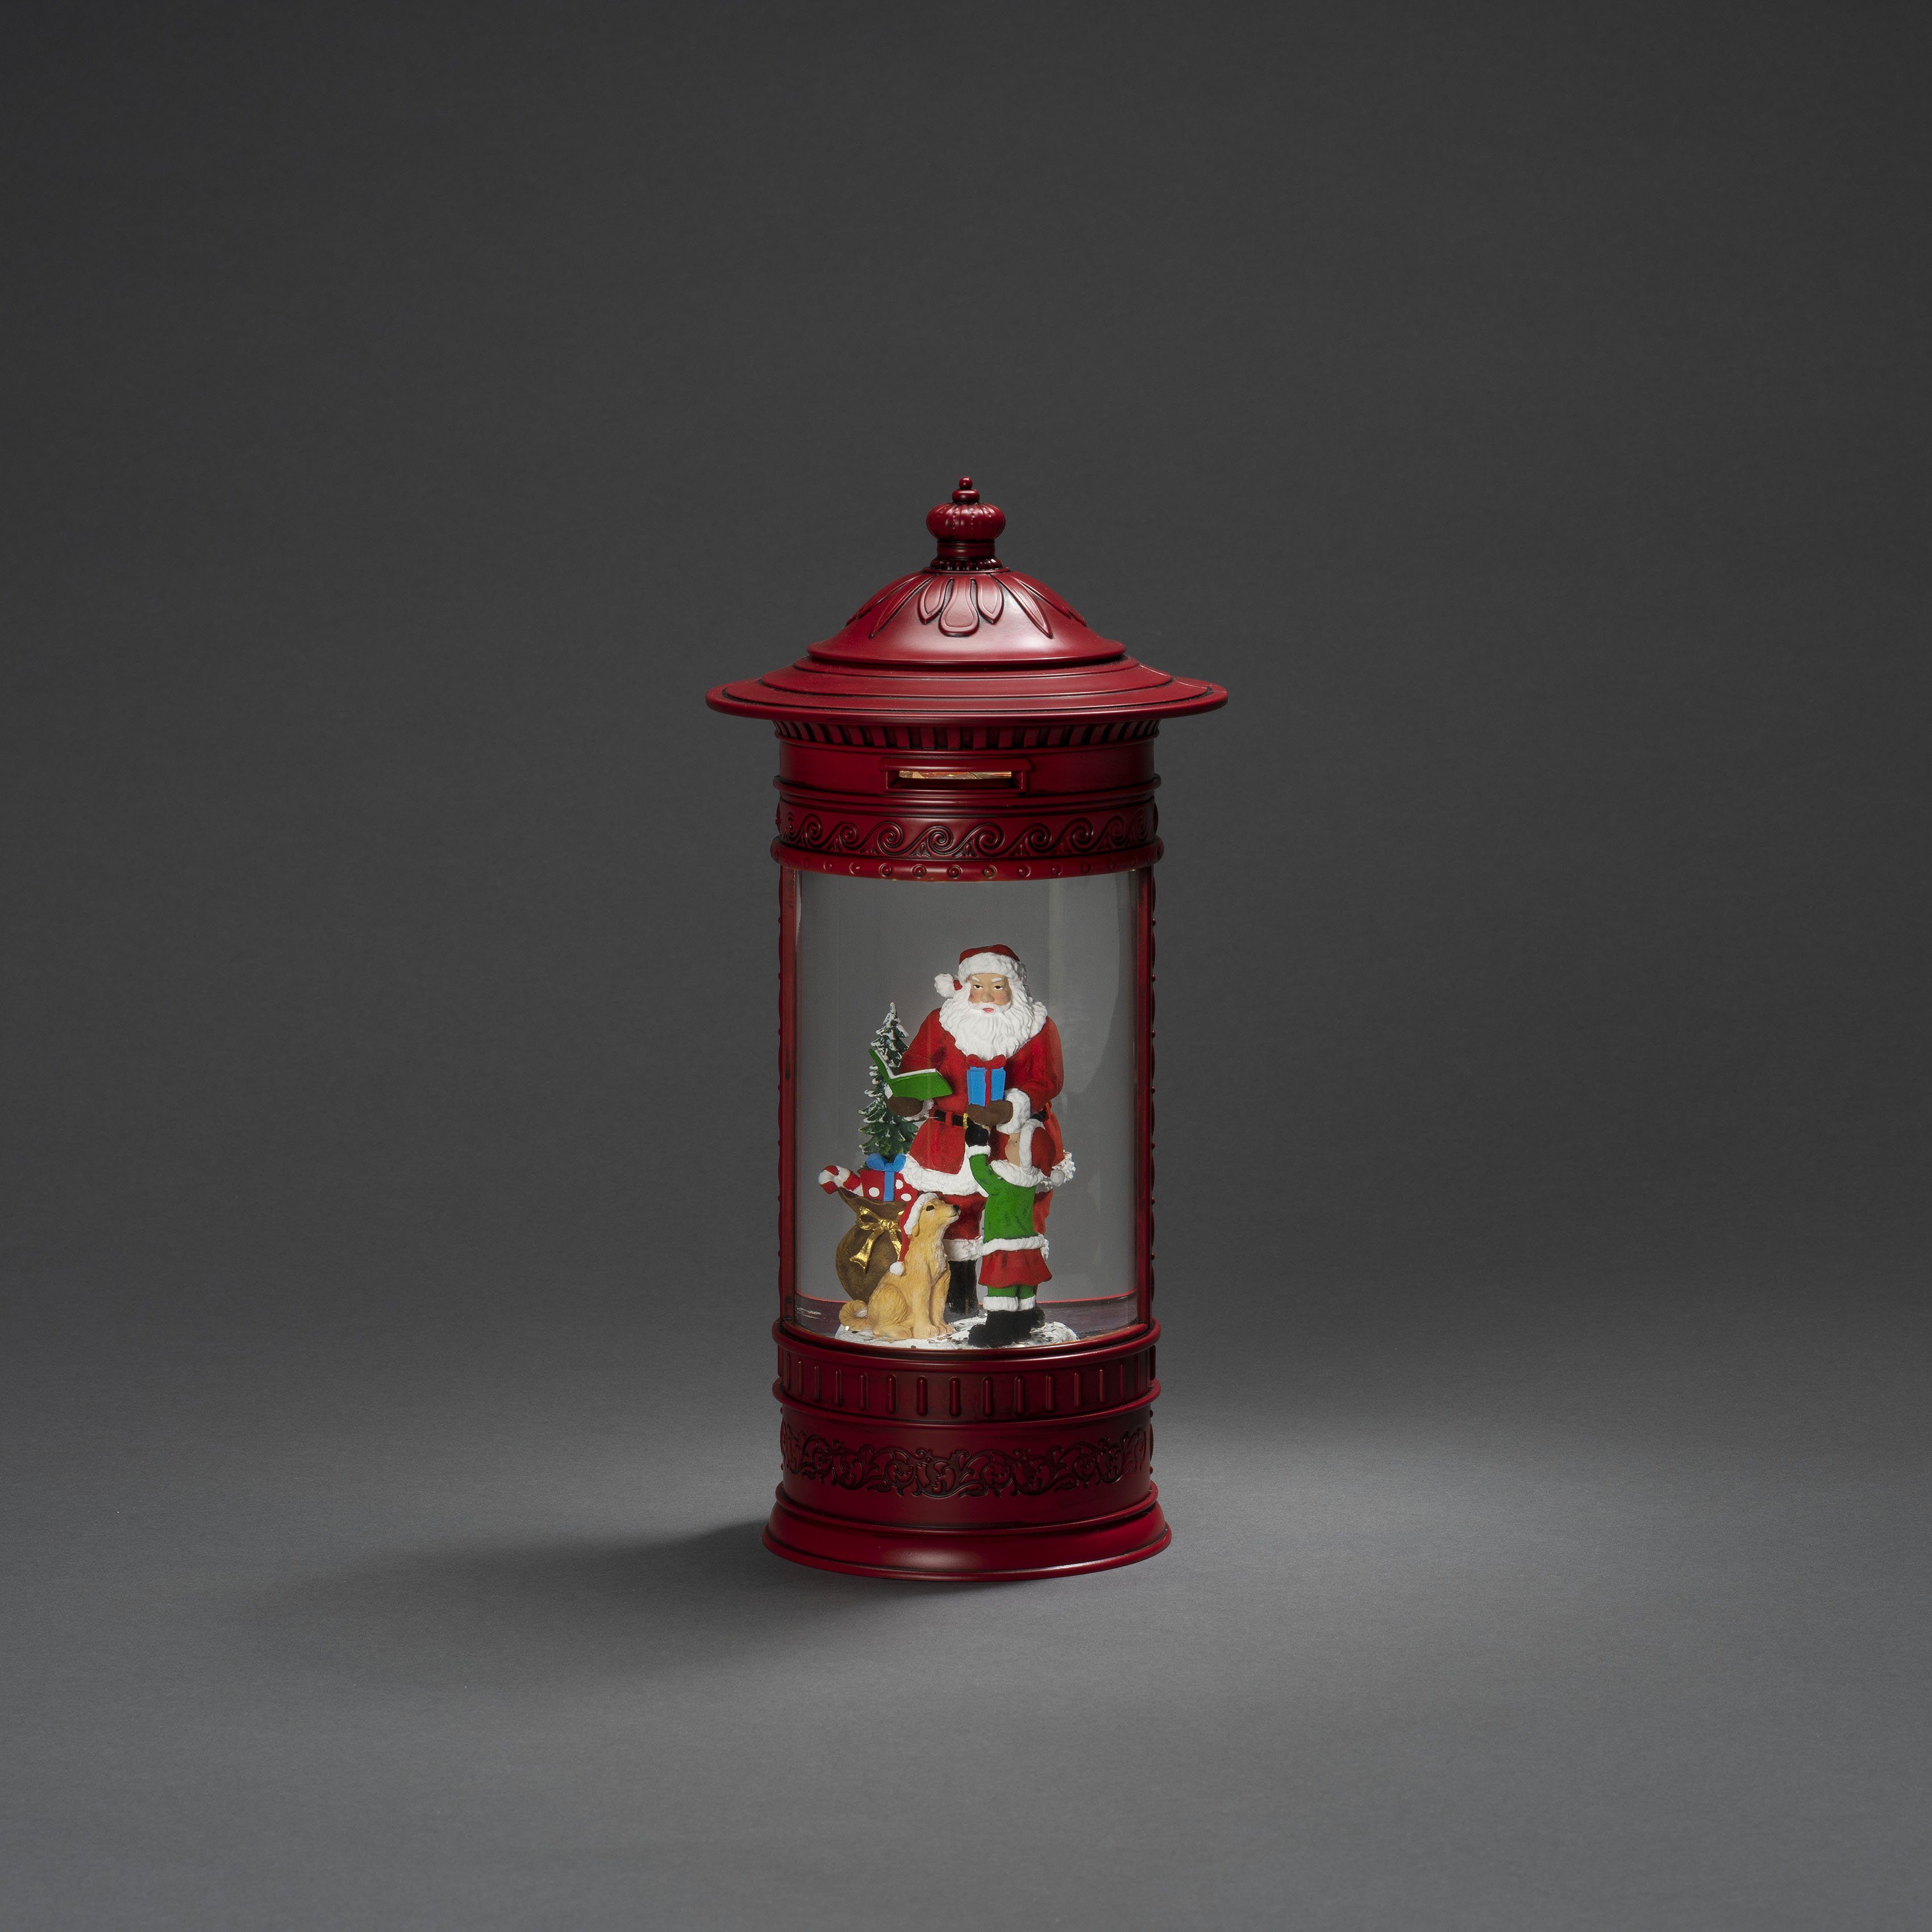 KONSTSMIDE LED Laterne Weihnachtsdeko rot, LED integriert, mit Briefkasten, + fest Hund" Warmweiß, LED Wasserlaterne, "Weihnachtsmann Kind rot